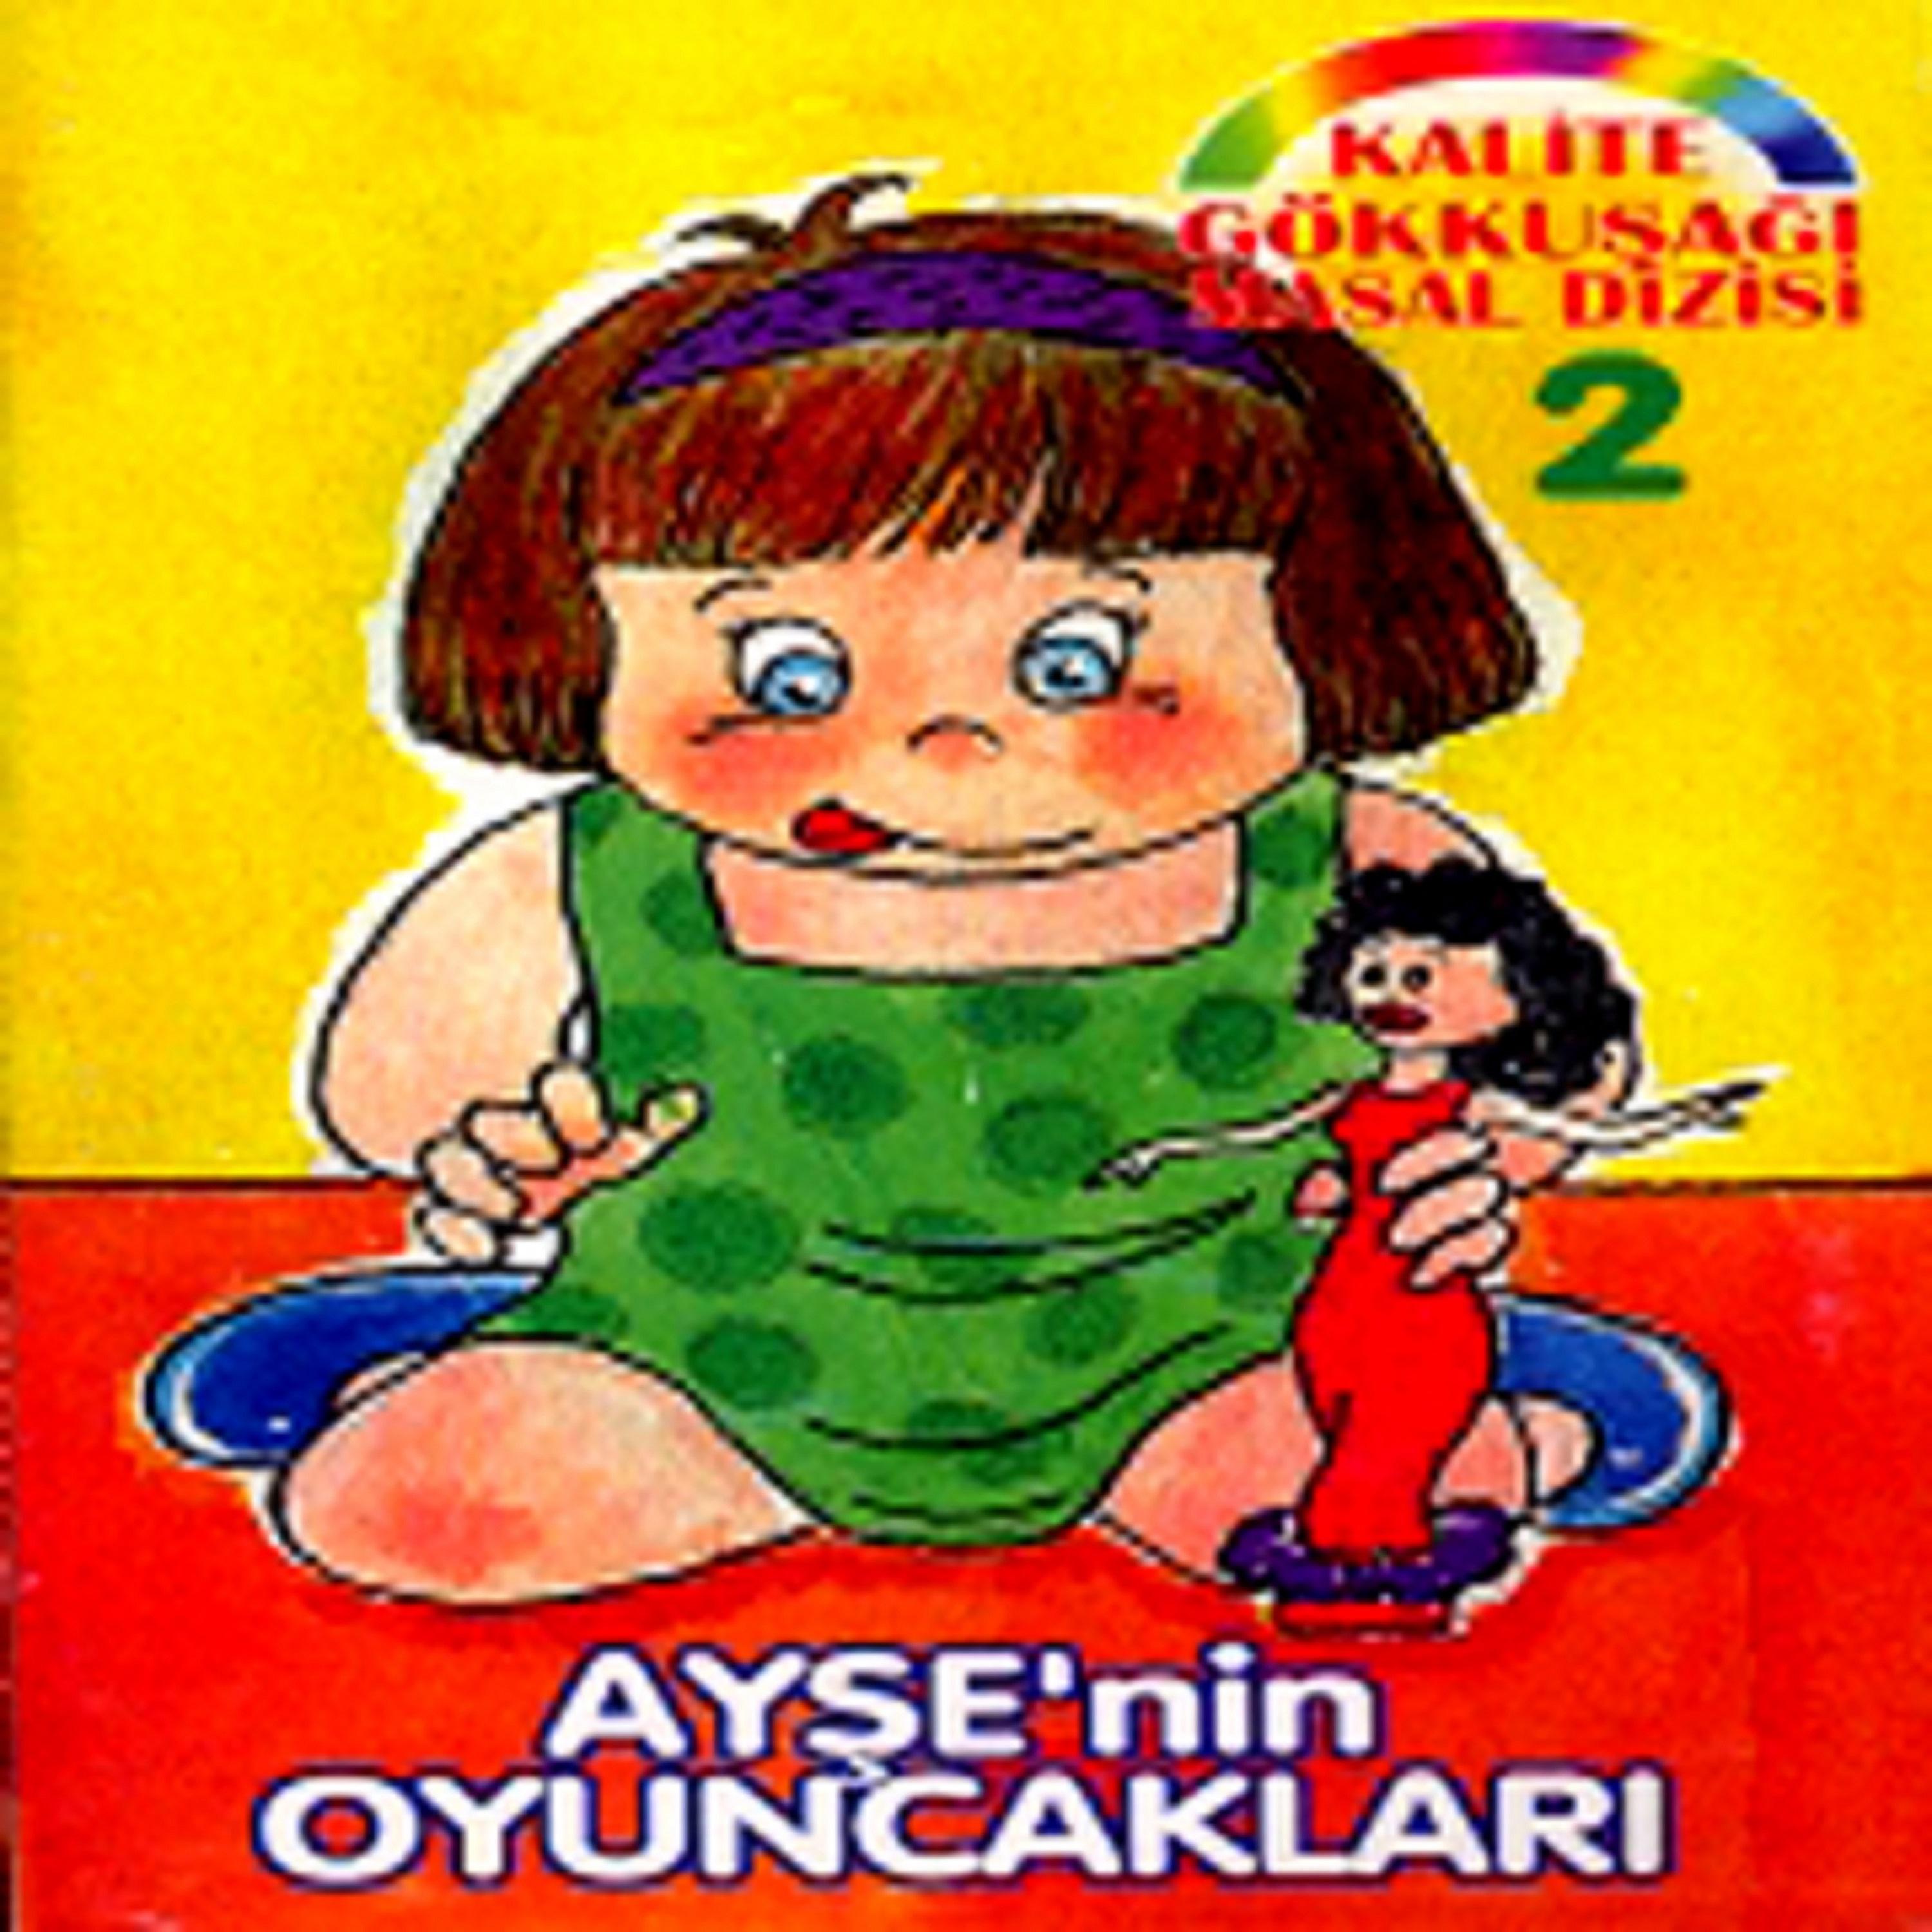 Постер альбома Ayse'nin Oyuncaklari / Kalite Gökkusagi Masal Dizisi, Vol.2